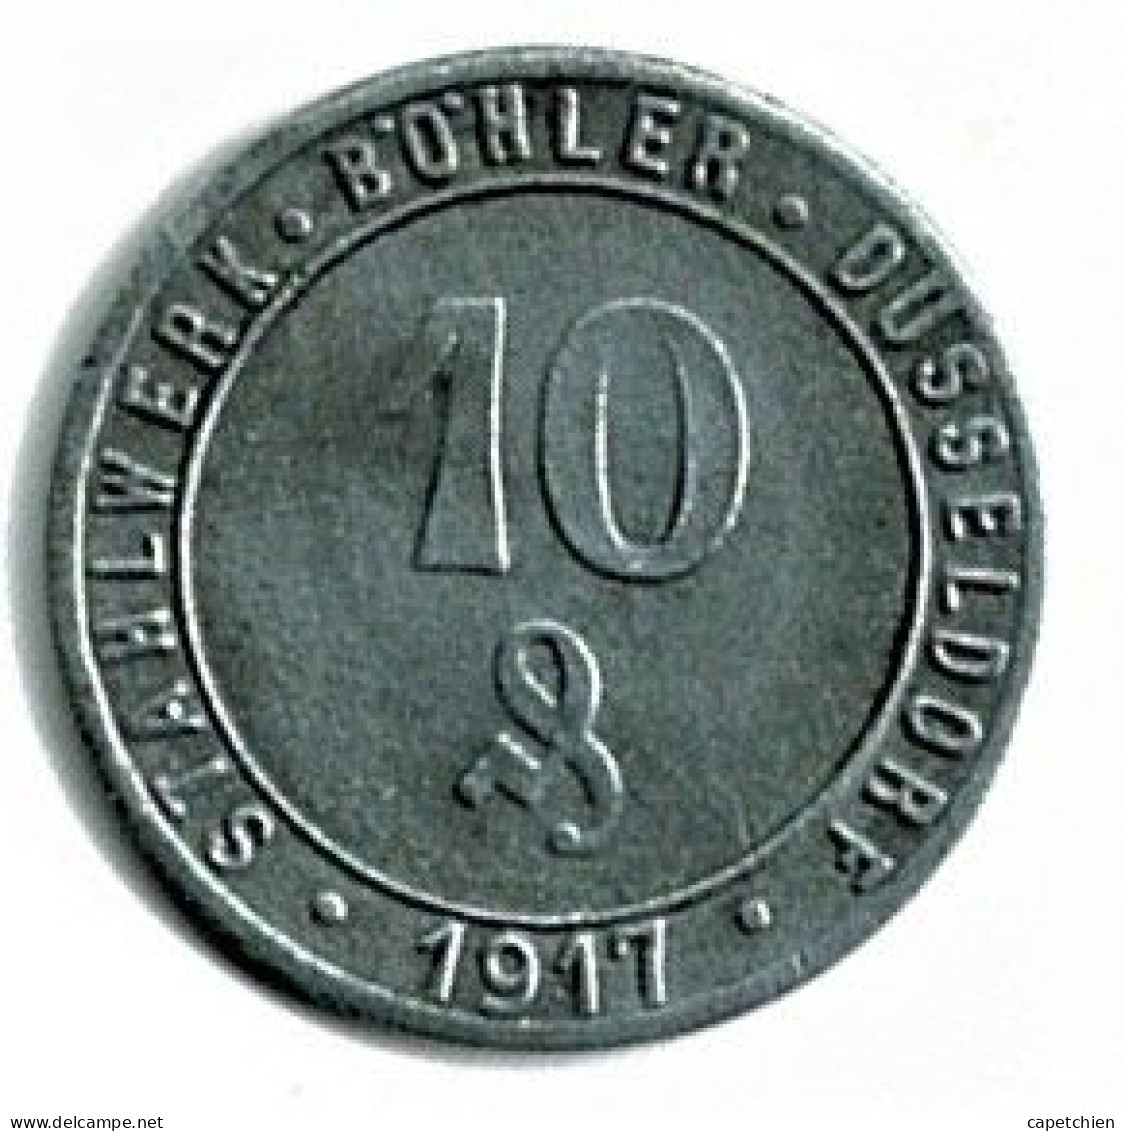 ALLEMAGNE / NOTGELD / STAHL WERK BÖHLER DÜSSELDORF / 50 PFG../ 1917 / ZINC / 22  Mm / ETAT SUPERBE / 3352.1 - Monetary/Of Necessity